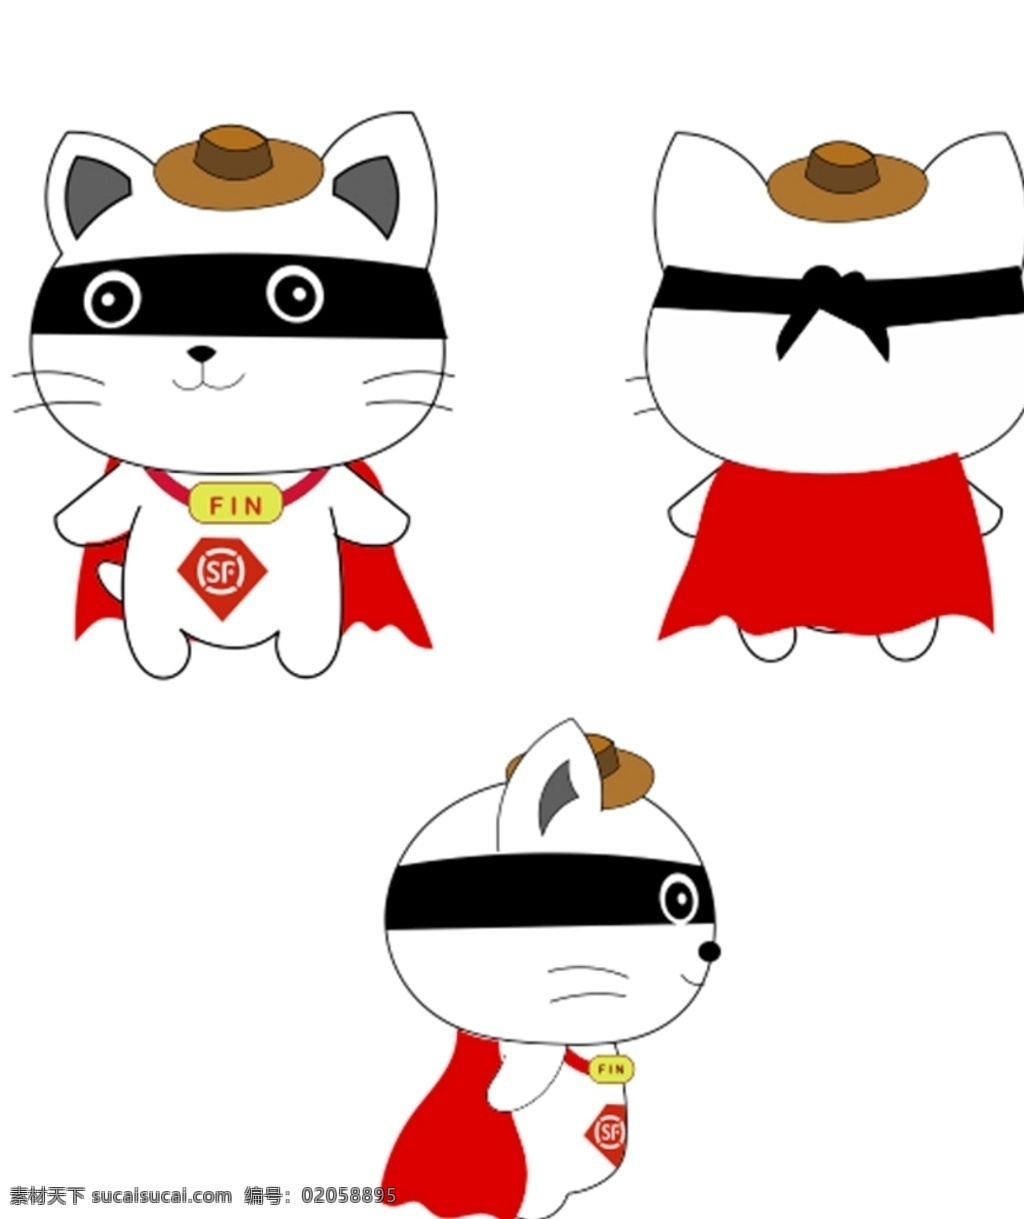 顺丰英雄 顺丰 英雄 卡通 sf 可爱猫 吉祥物 矢量 红色披风 戴帽子的猫 黑色眼罩卡通 logo设计